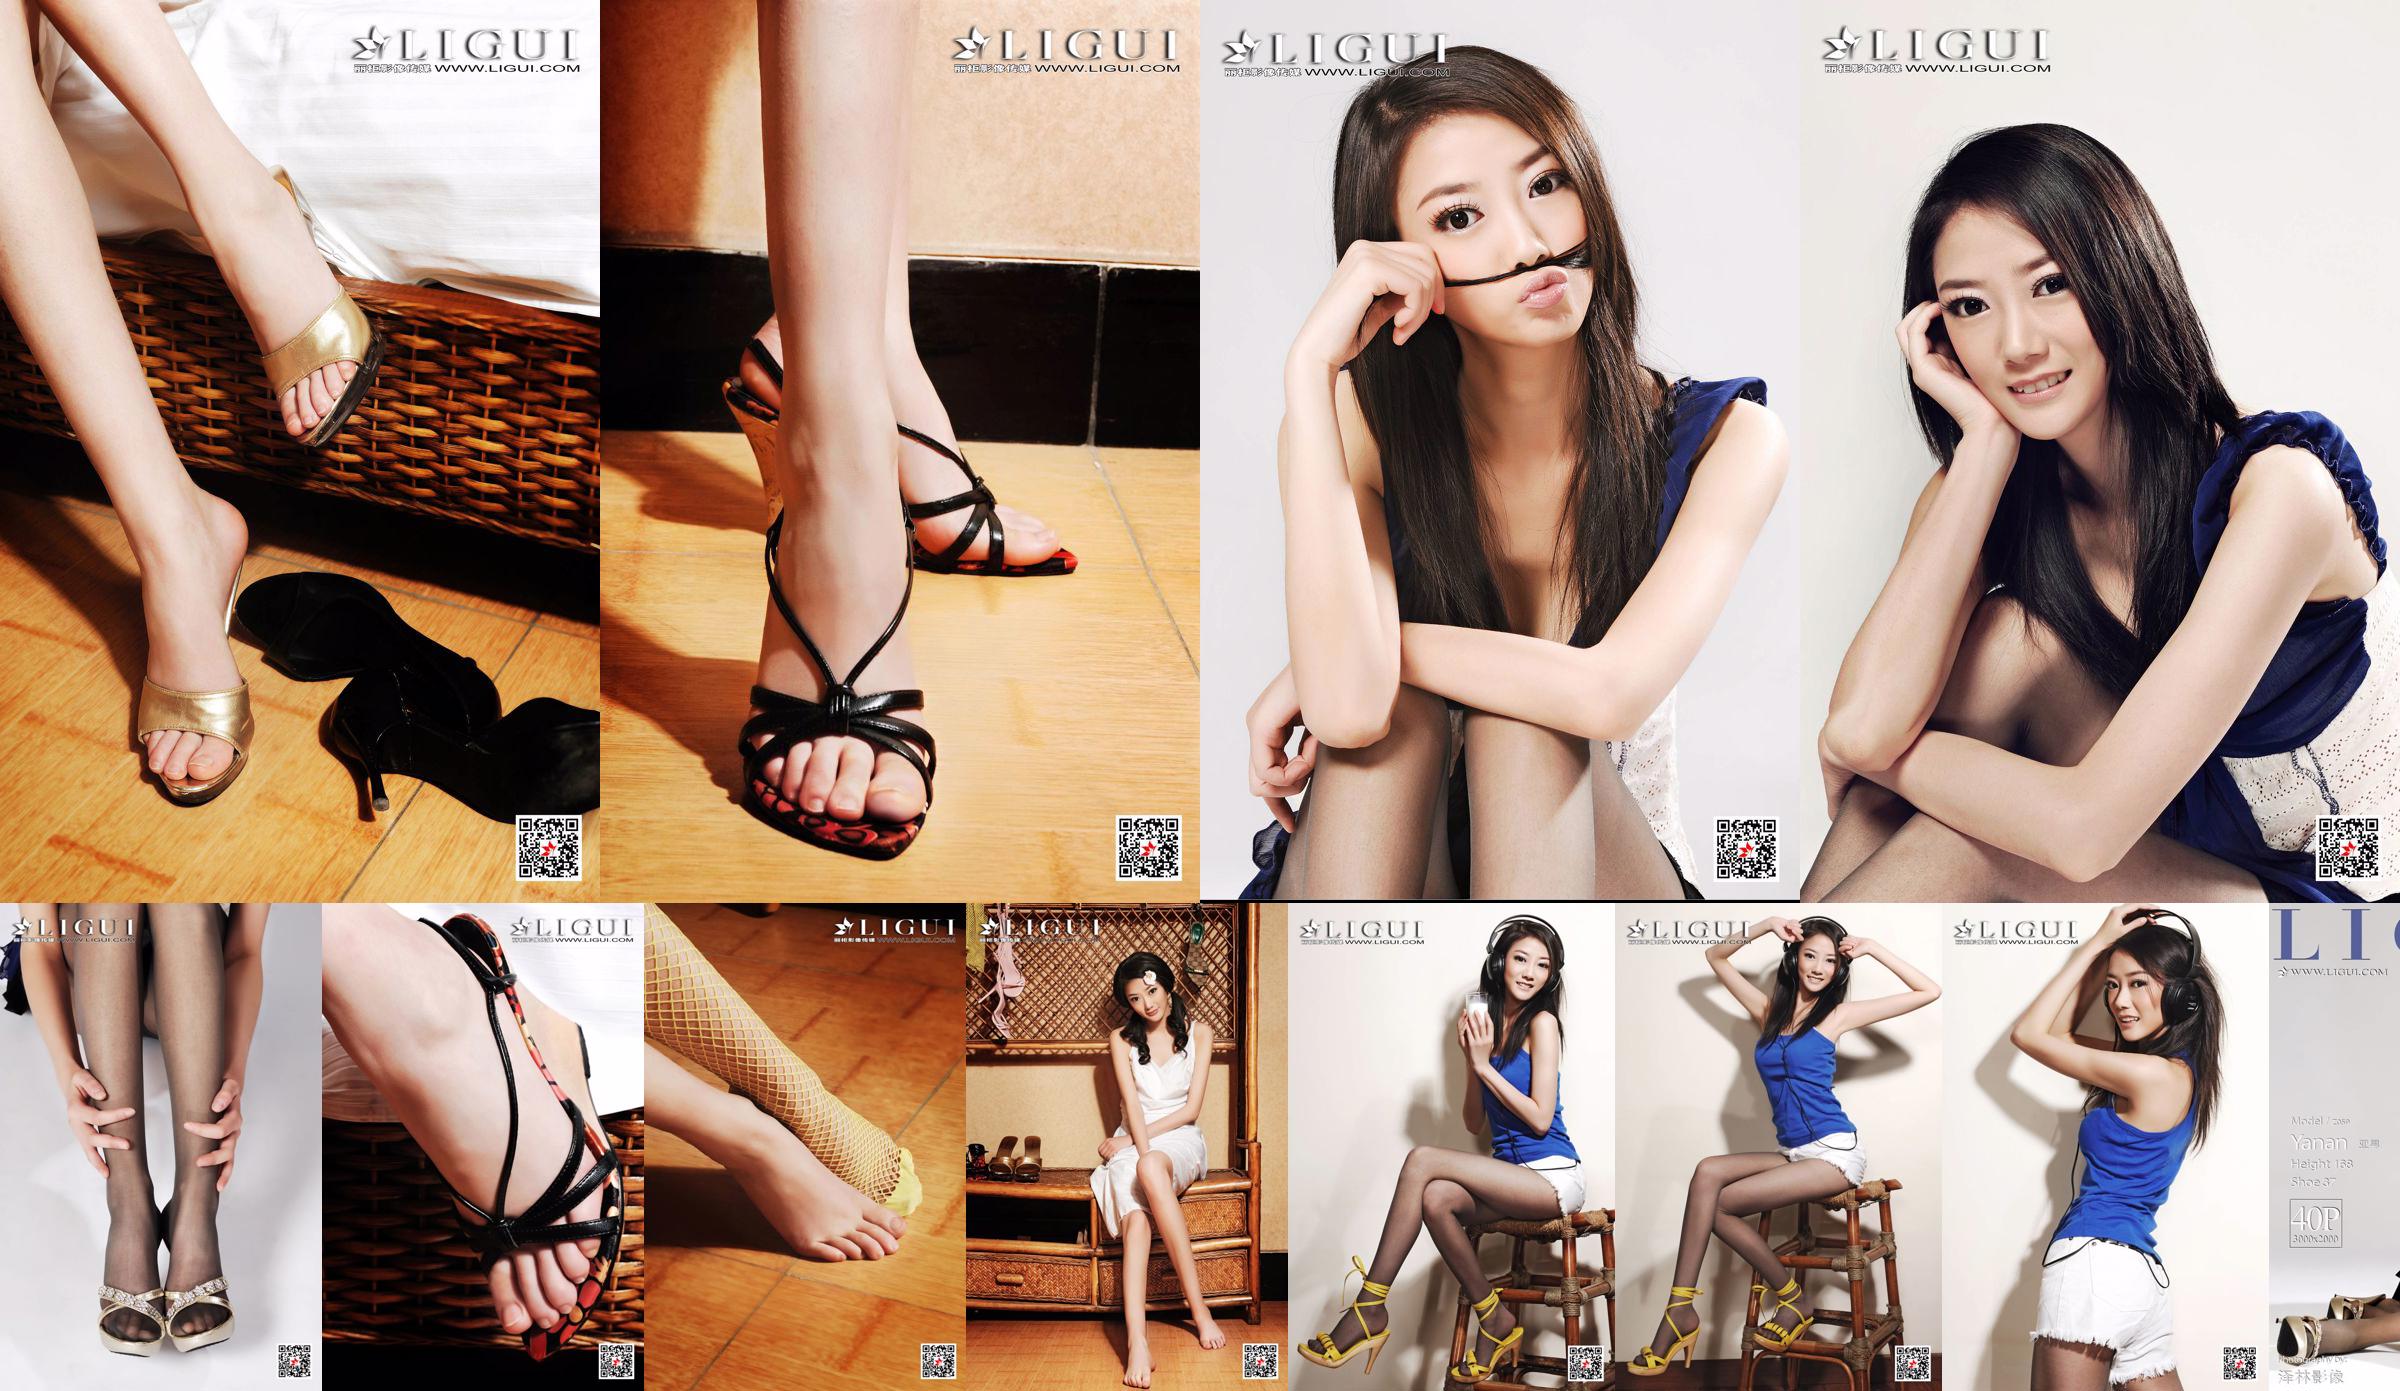 Азиатский мальчик-модель "Девушка с длинными ногами и темпераментом" [Лигуй Лигуй] No.fce6cf Страница 1